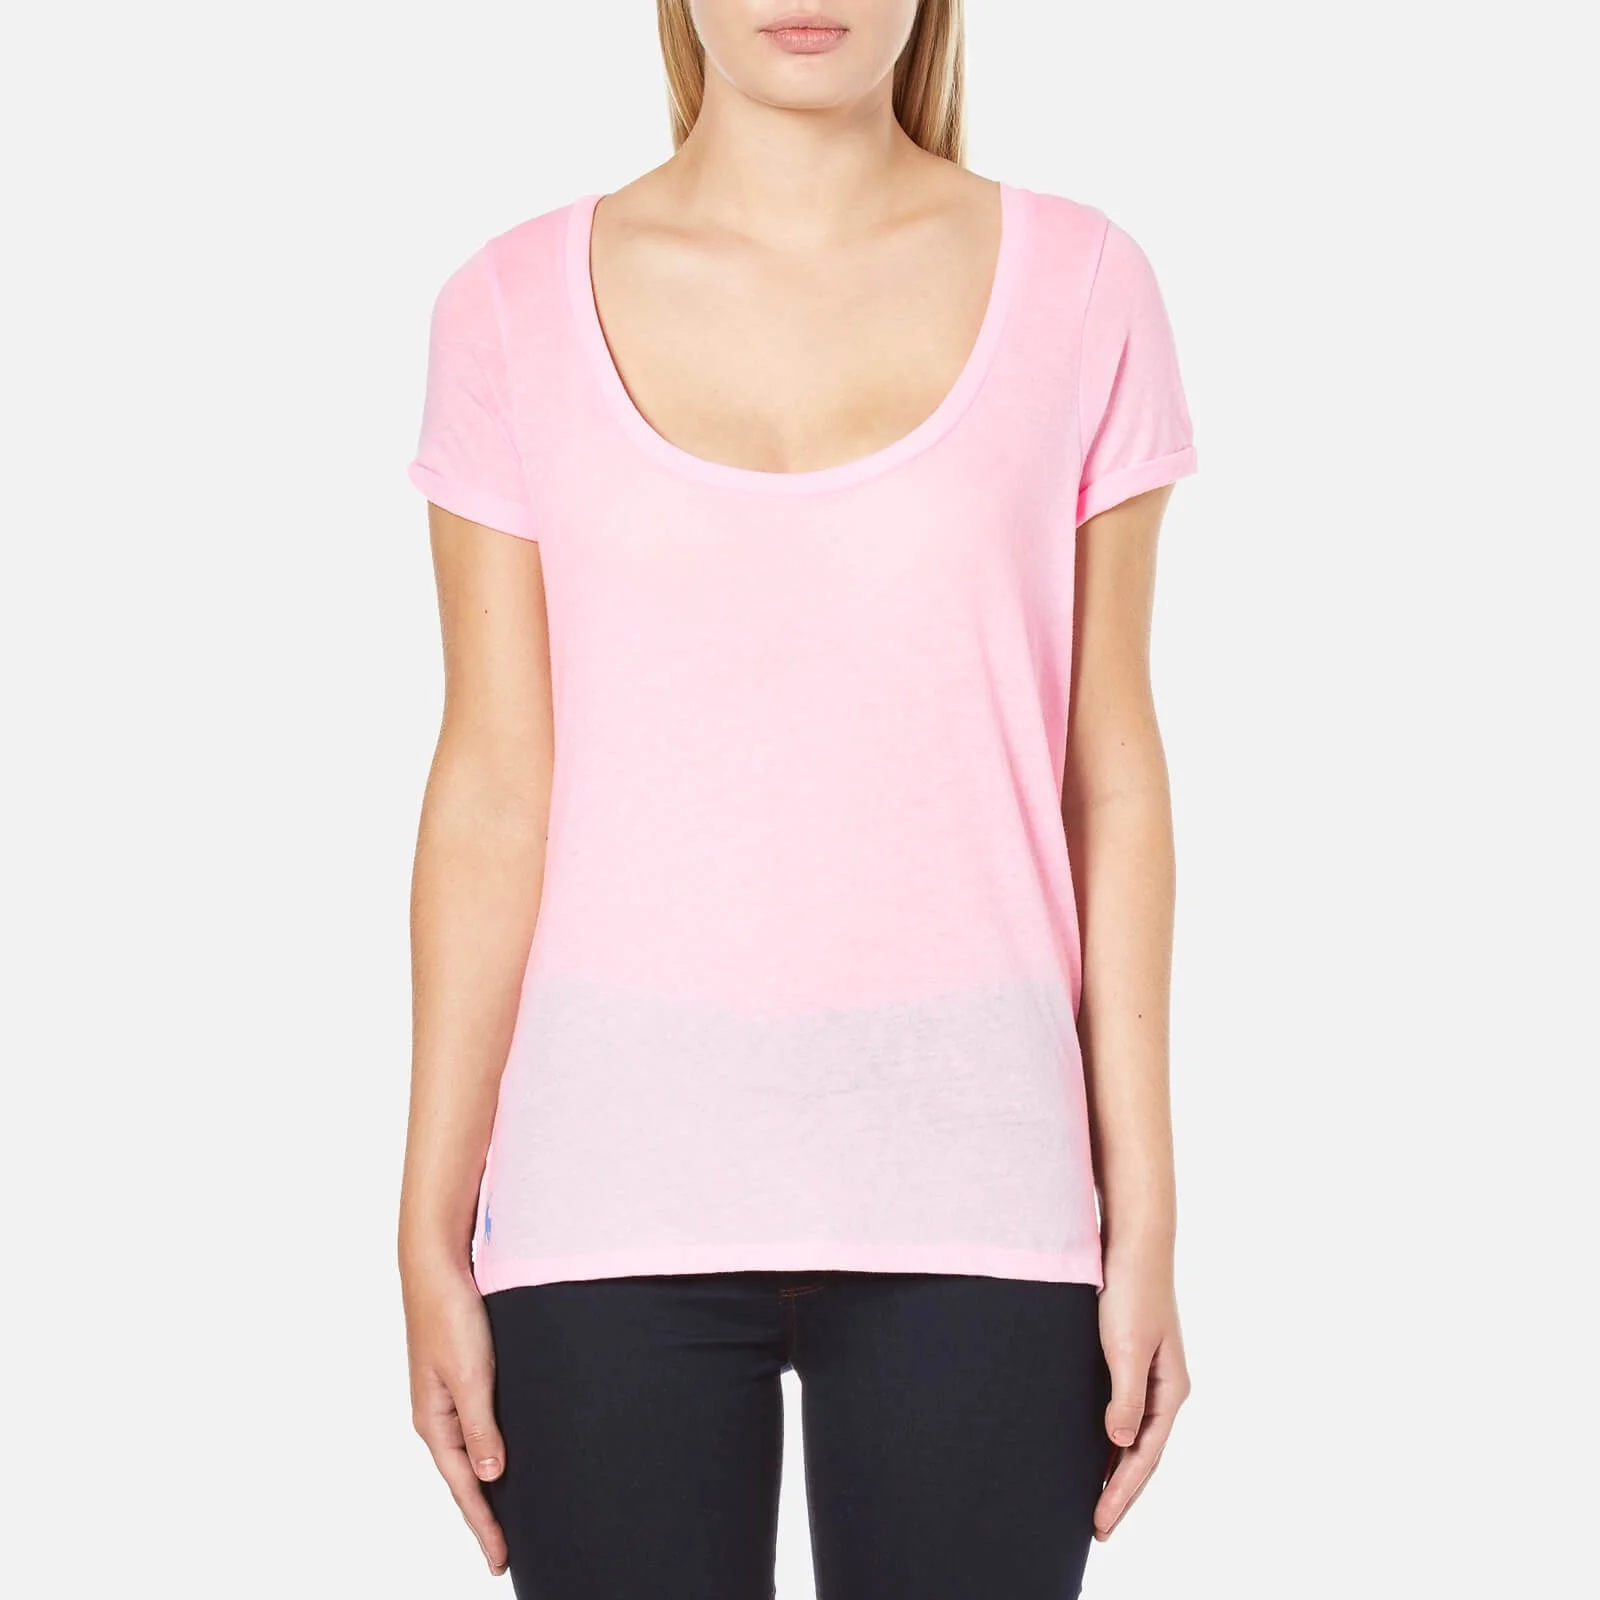 Polo Ralph Lauren Women's Scoop Neck T-Shirt - Pink Tailor Rose Image 1